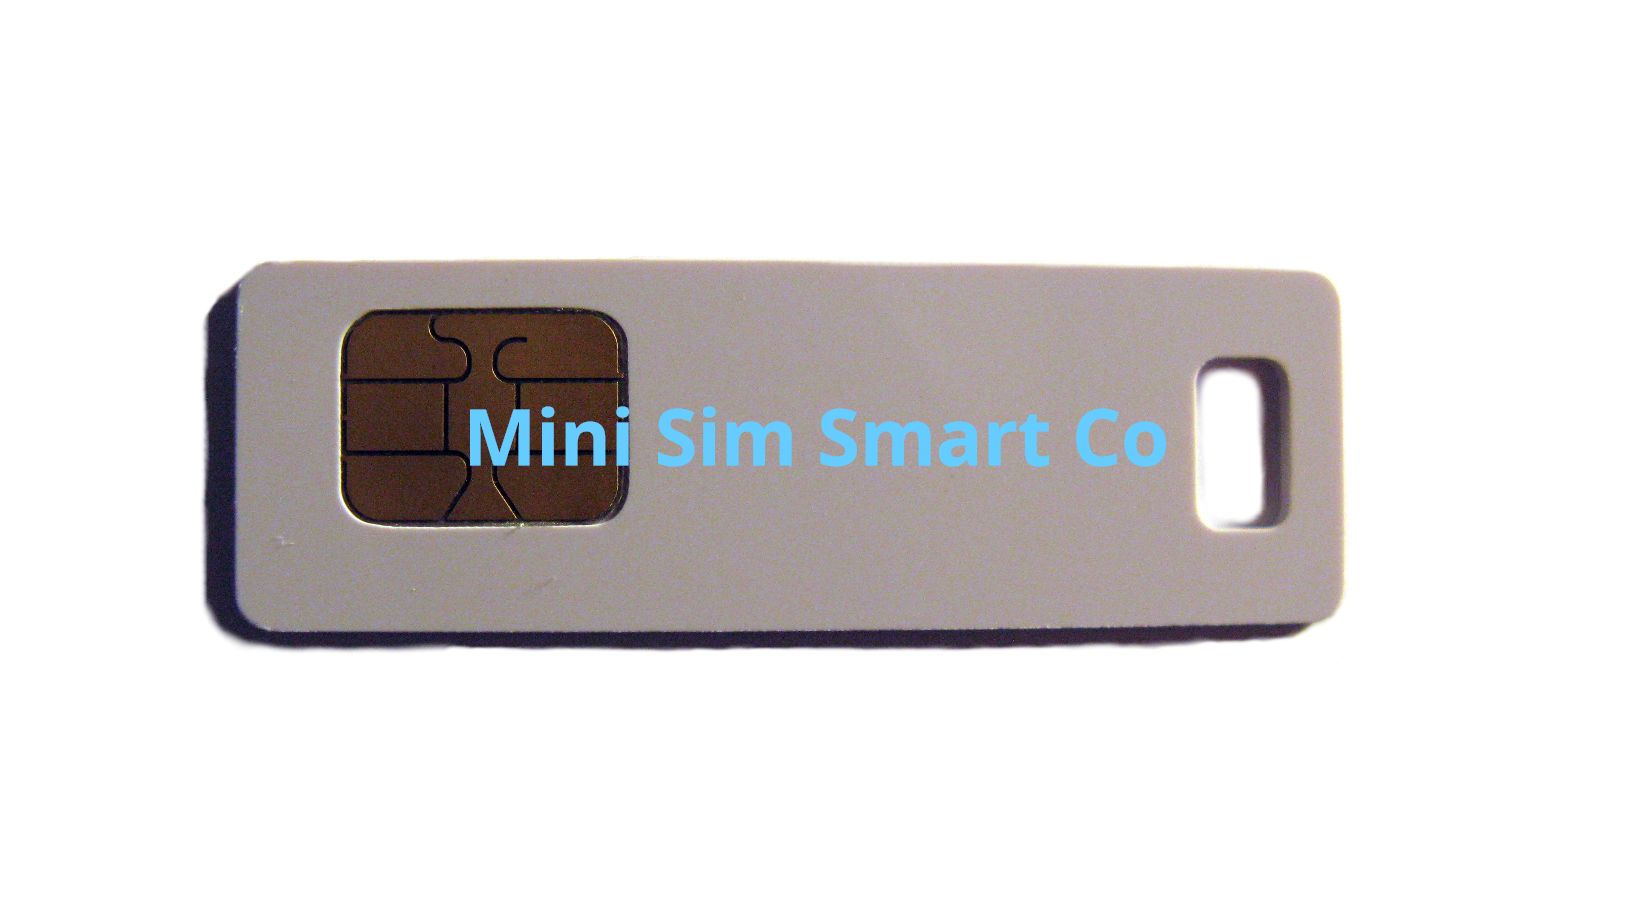 Mini SIM